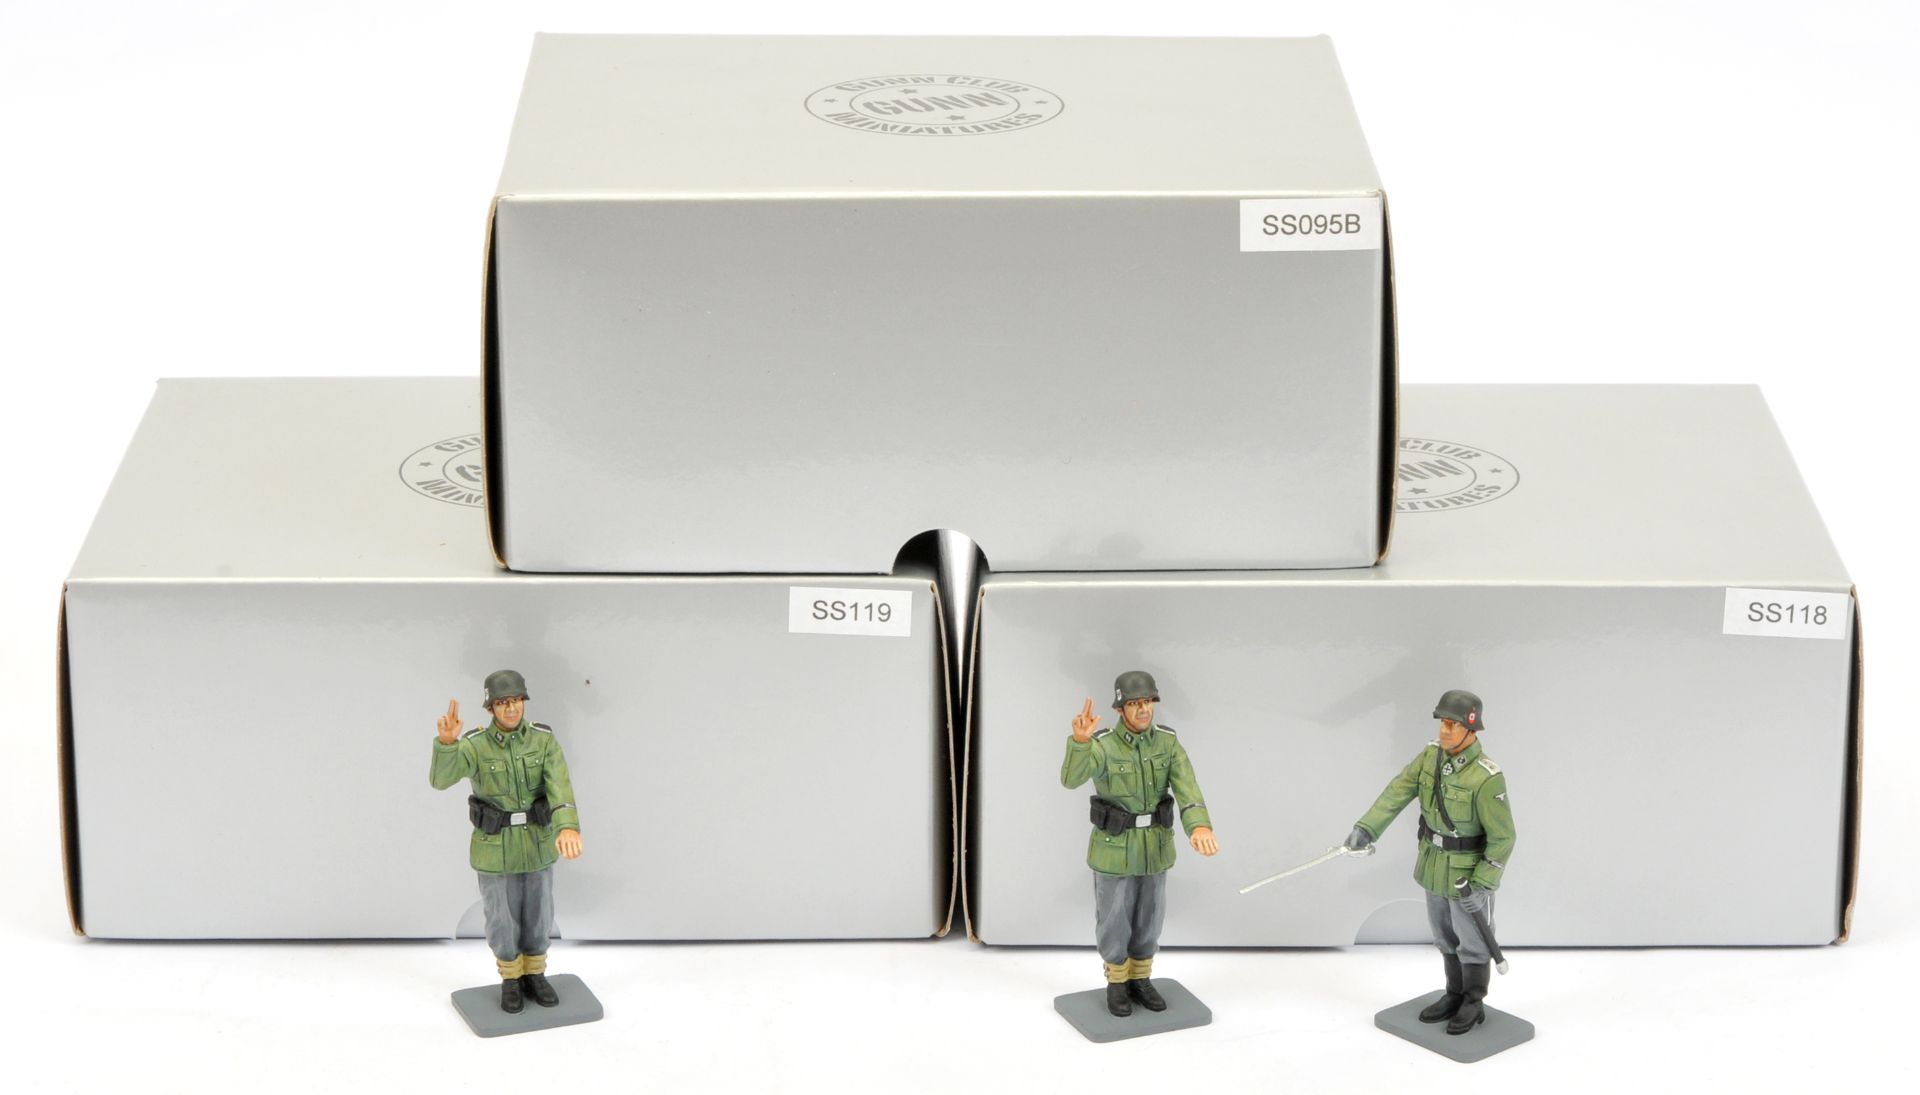 Thomas Gunn Miniatures (Gunn Club Miniatures) - A Group of Boxed, German SS World War II Sets